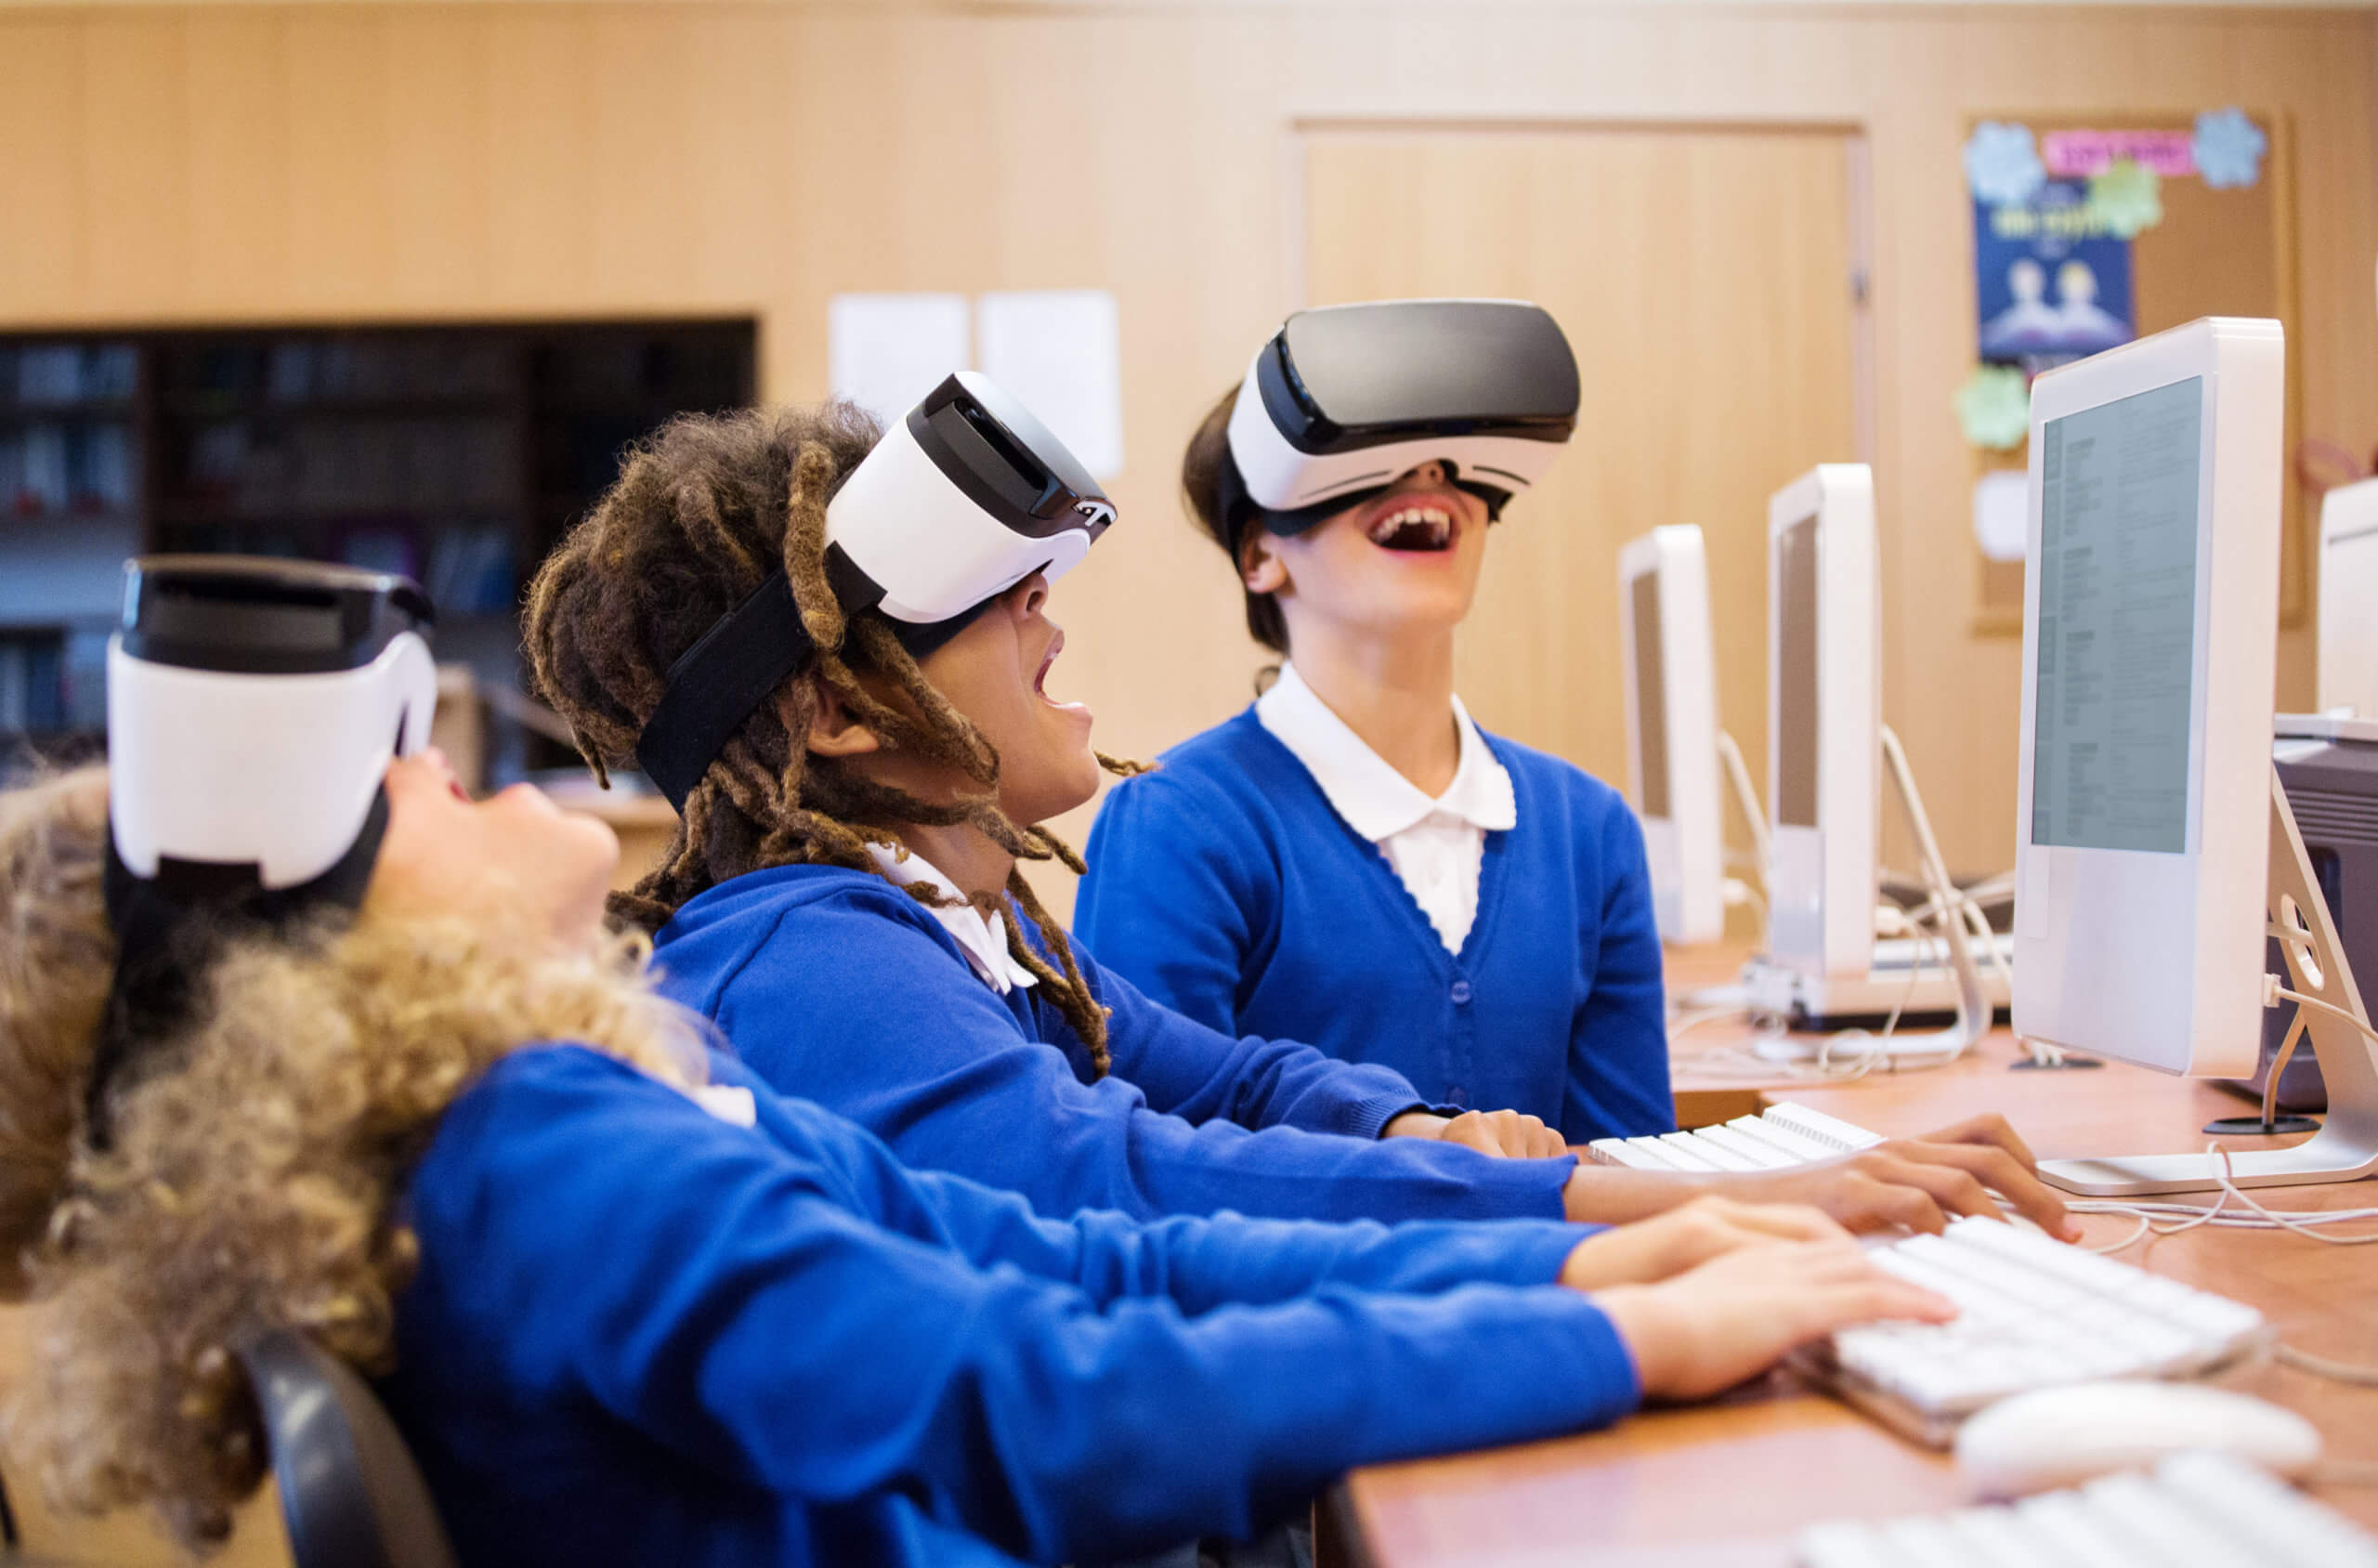 La réalité virtuelle intègre désormais les salles de classe.